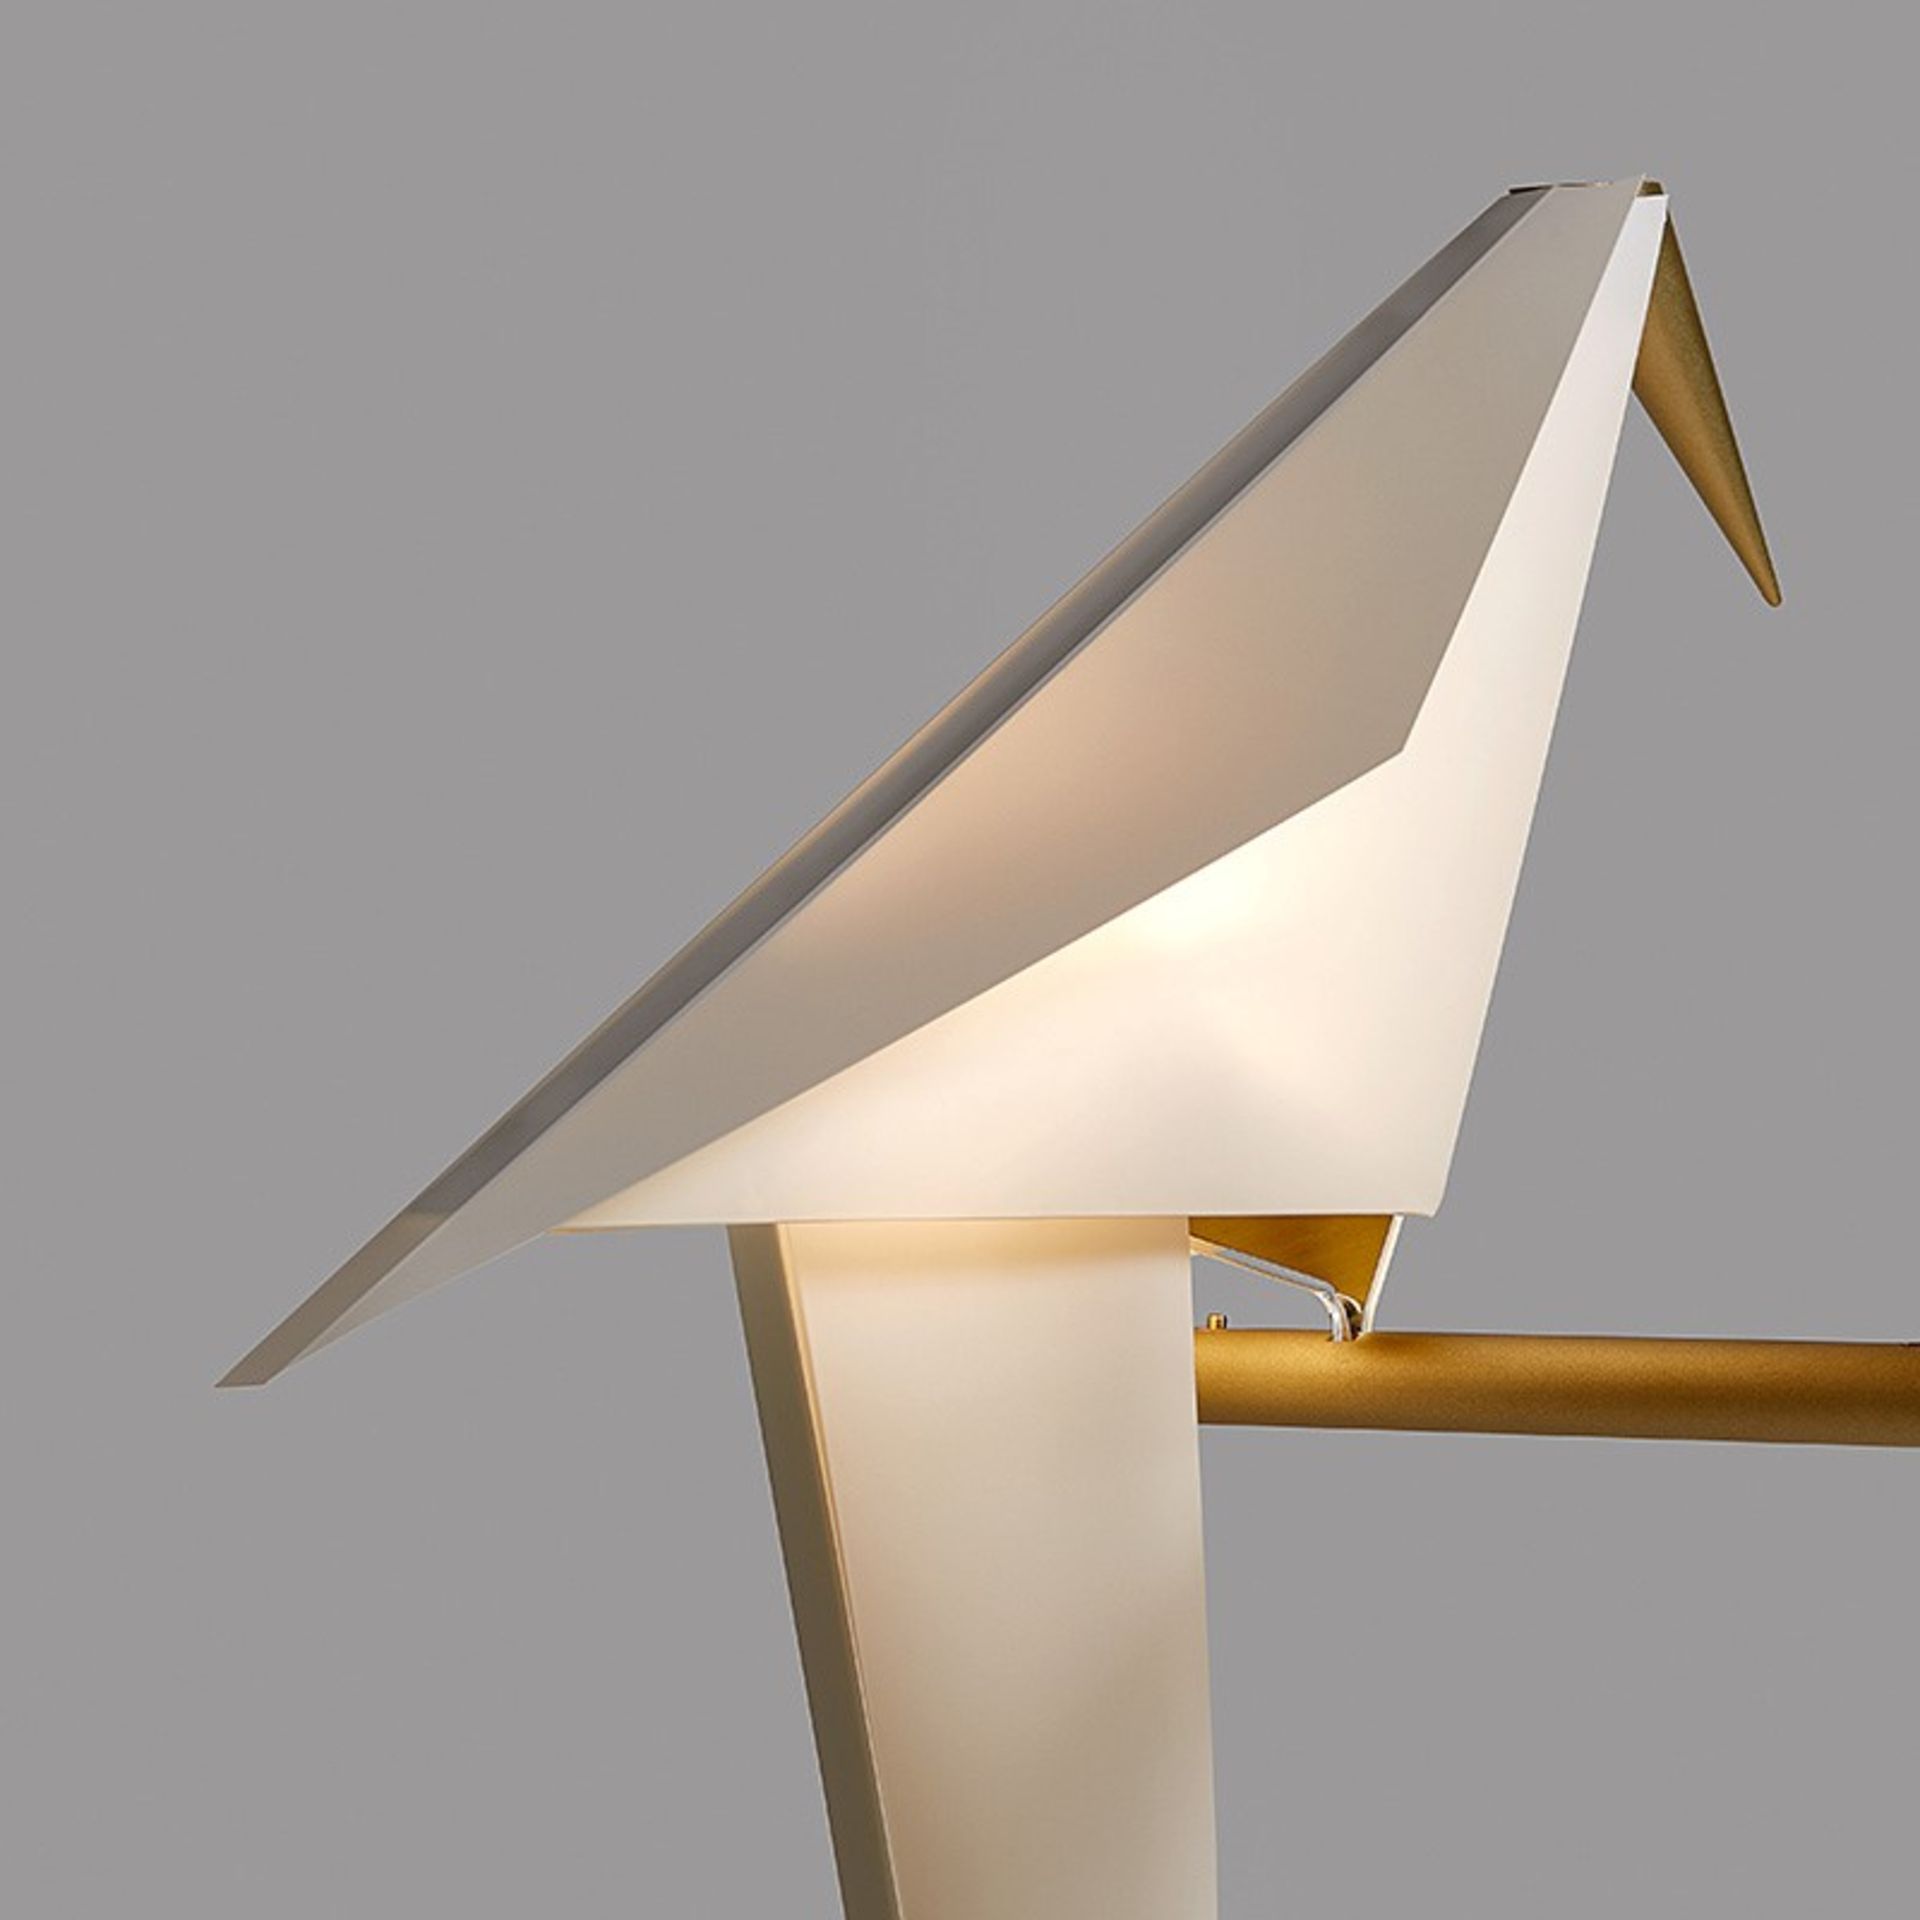 1 x MOOOI 'Perch' Designer Floor Lamp - Width: 28cm x Depth: 33cm x Height: 164cm - Ref: 5648005 / - Image 4 of 20